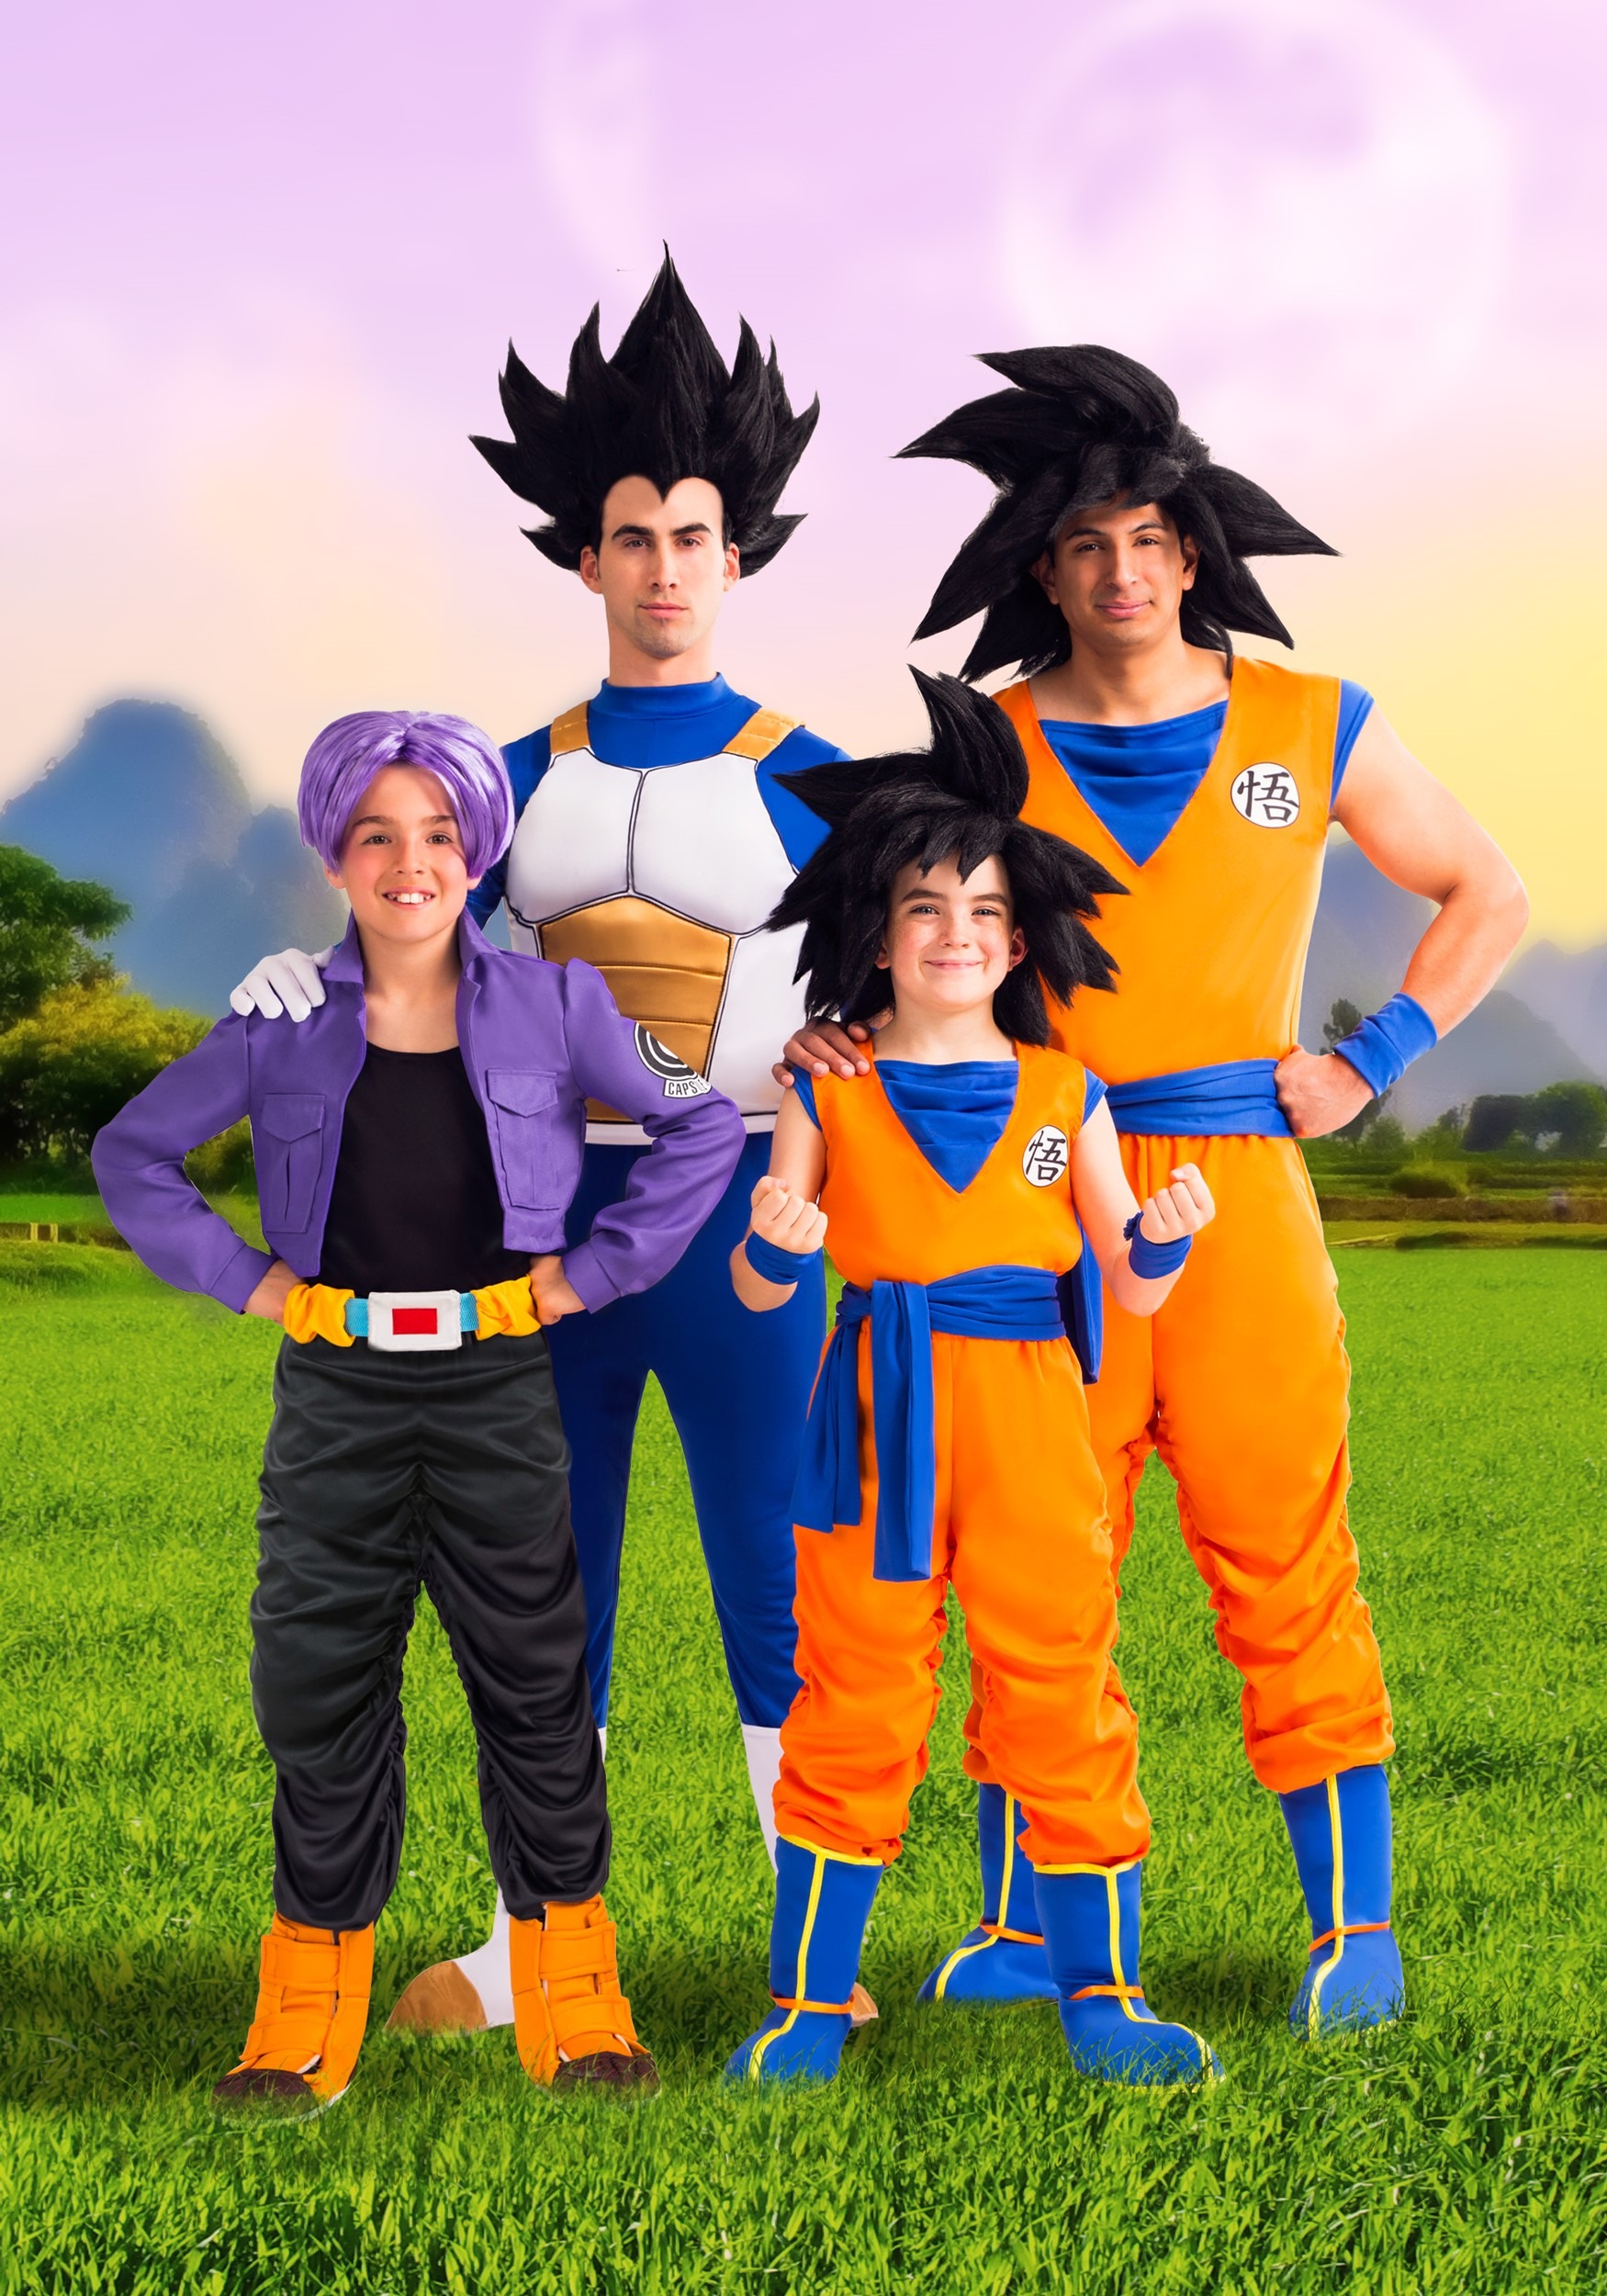 Kids Dragon Ball Z Trunks Costume